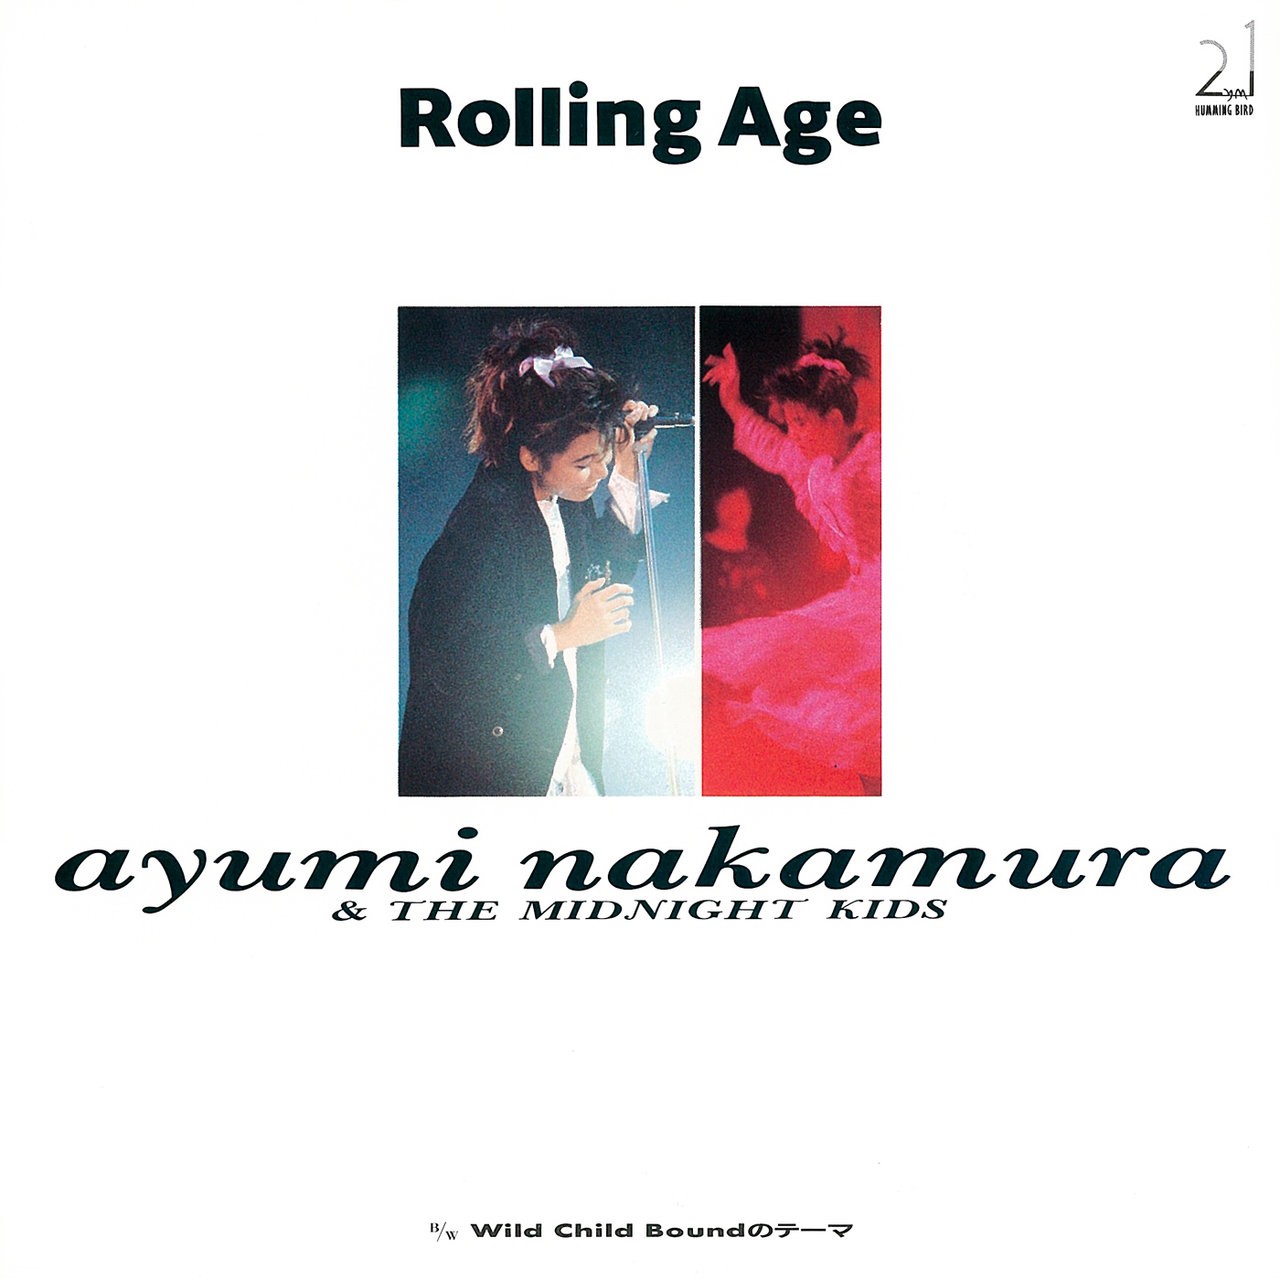 [Single] Ayumi Nakamura (中村あゆみ) – Rolling Age ⁄ Wild Child Boundのテーマ (2019 Remastered) (1987/2019) [FLAC 24bit/48kHz]